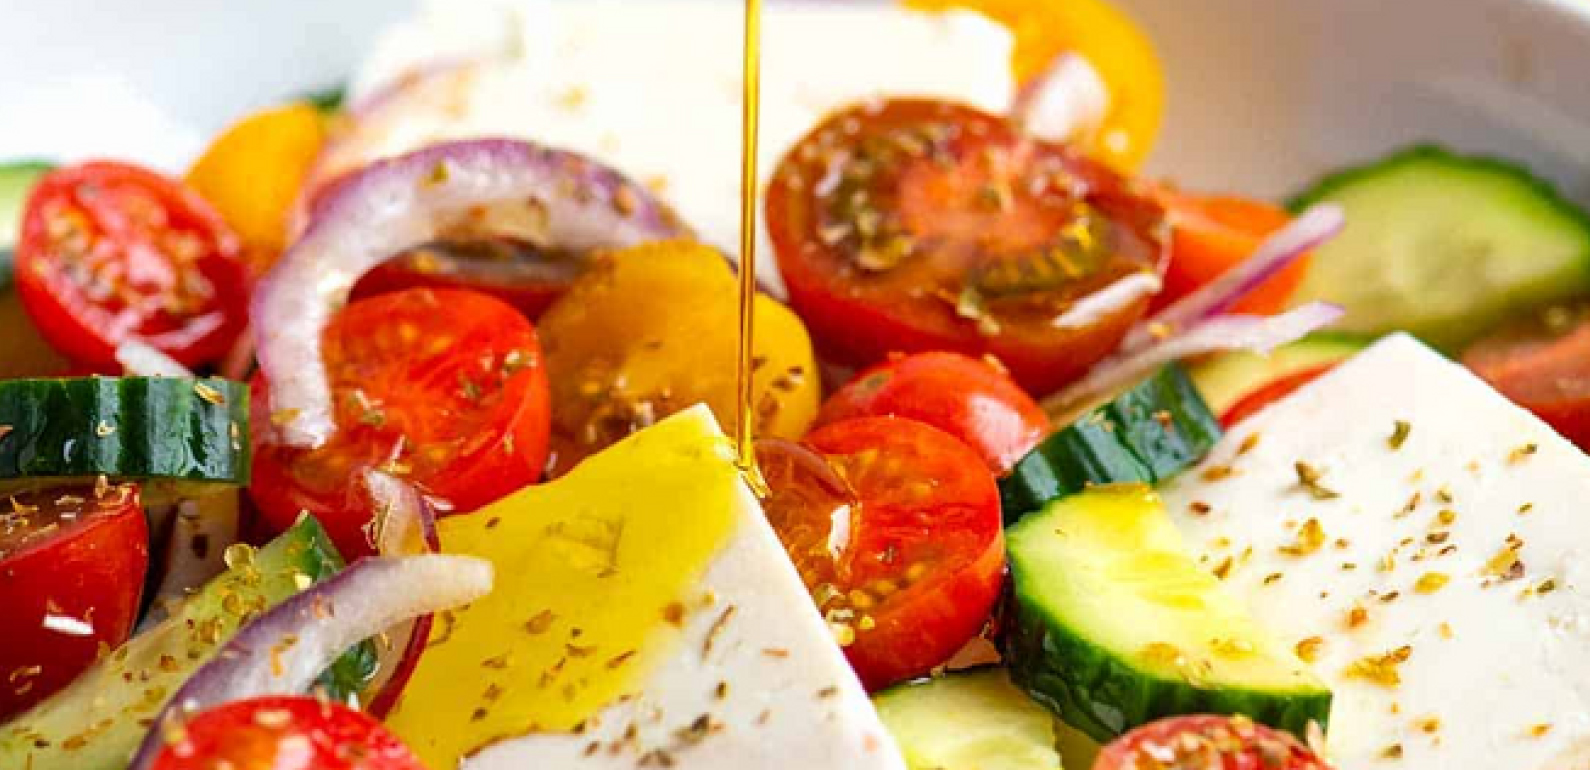 ΕΛΛΗΝΙΚΗ ΣΑΛΑΤΑ: Συνταγές ελληνικών φαγητών - Κρητικές συνταγές με ελαιόλαδο